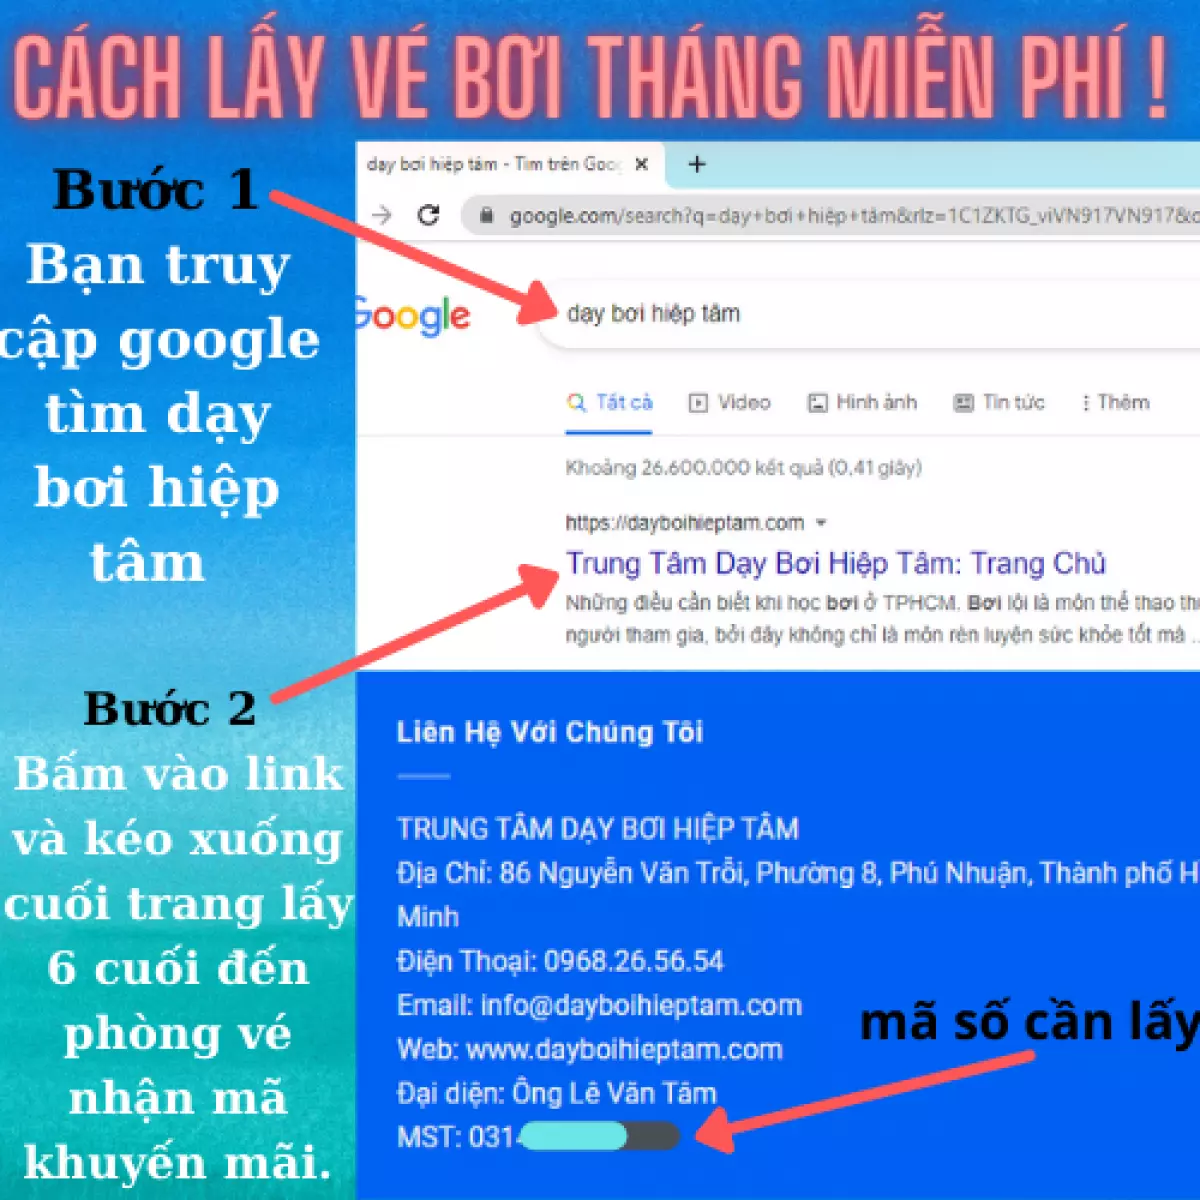 Review Bể Bơi Phương Hiền Chi – Q Long Biên – Hà Nội